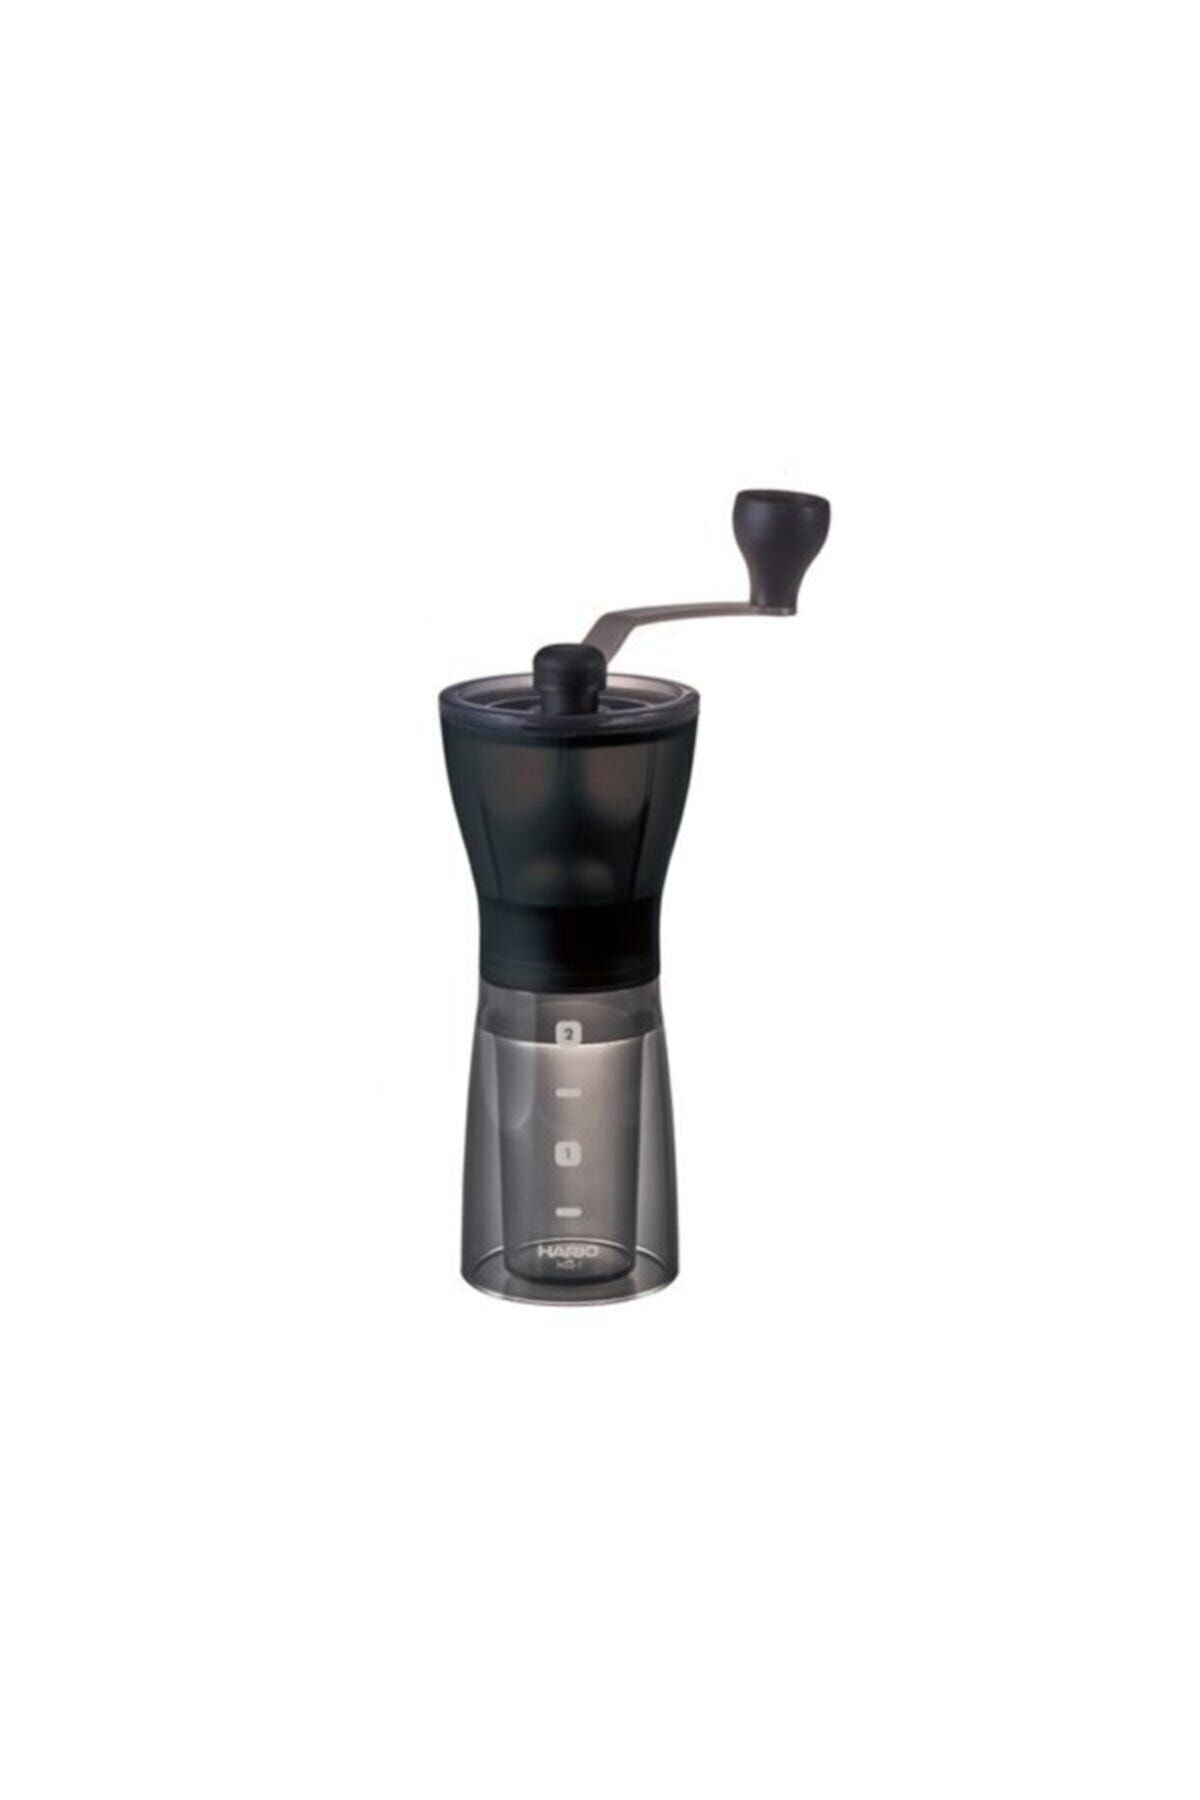 Hario Mini Plus Ceramic Coffee Mill - Harıo Mini Plus Seramik Kahve Değirmeni